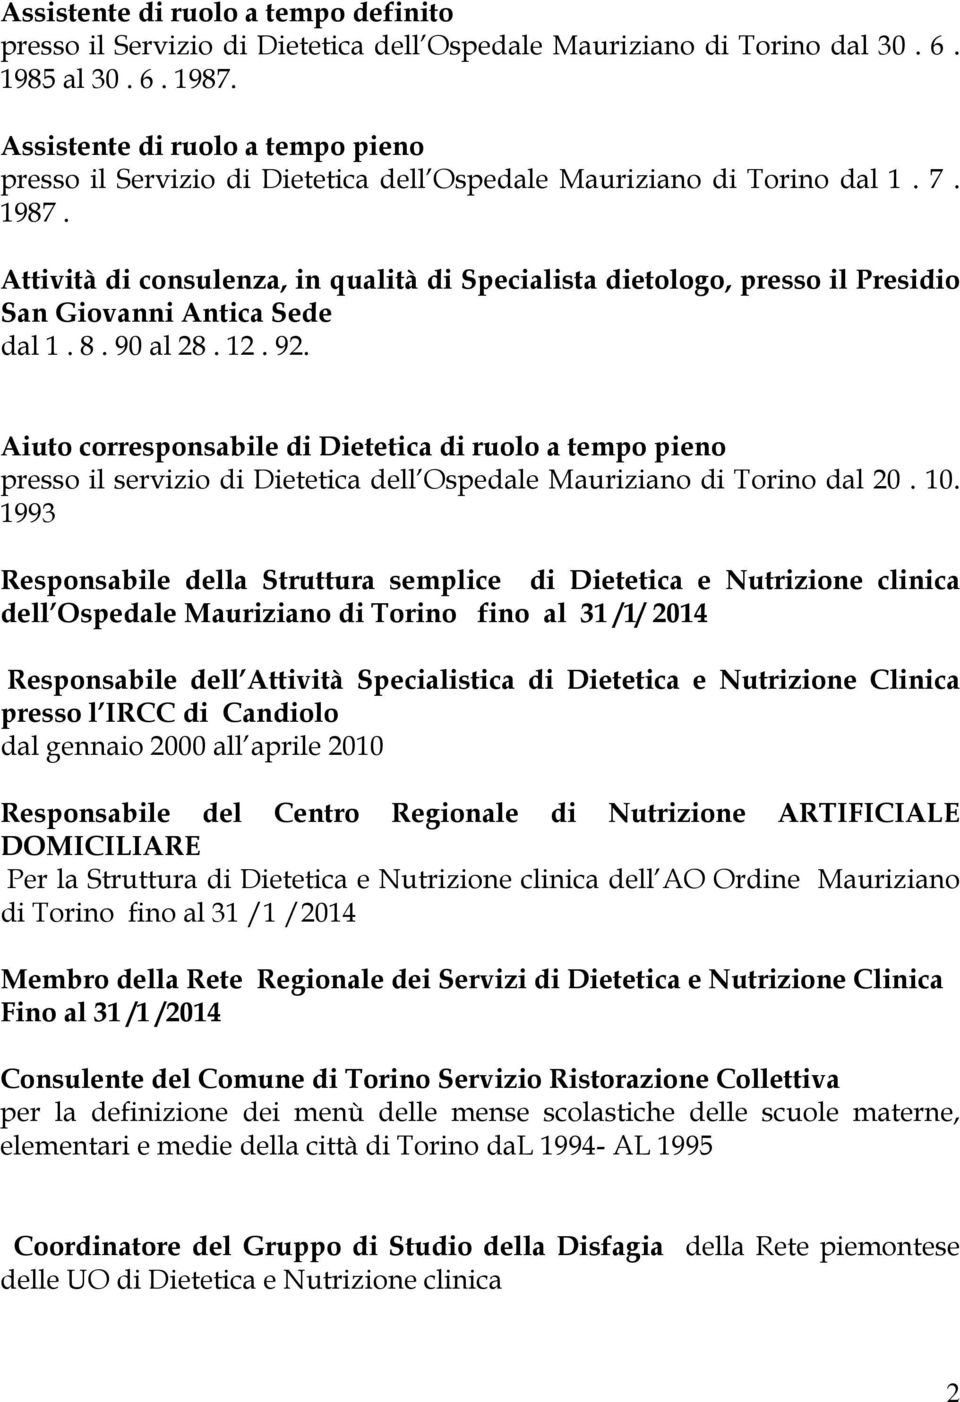 Attività di consulenza, in qualità di Specialista dietologo, presso il Presidio San Giovanni Antica Sede dal 1. 8. 90 al 28. 12. 92.